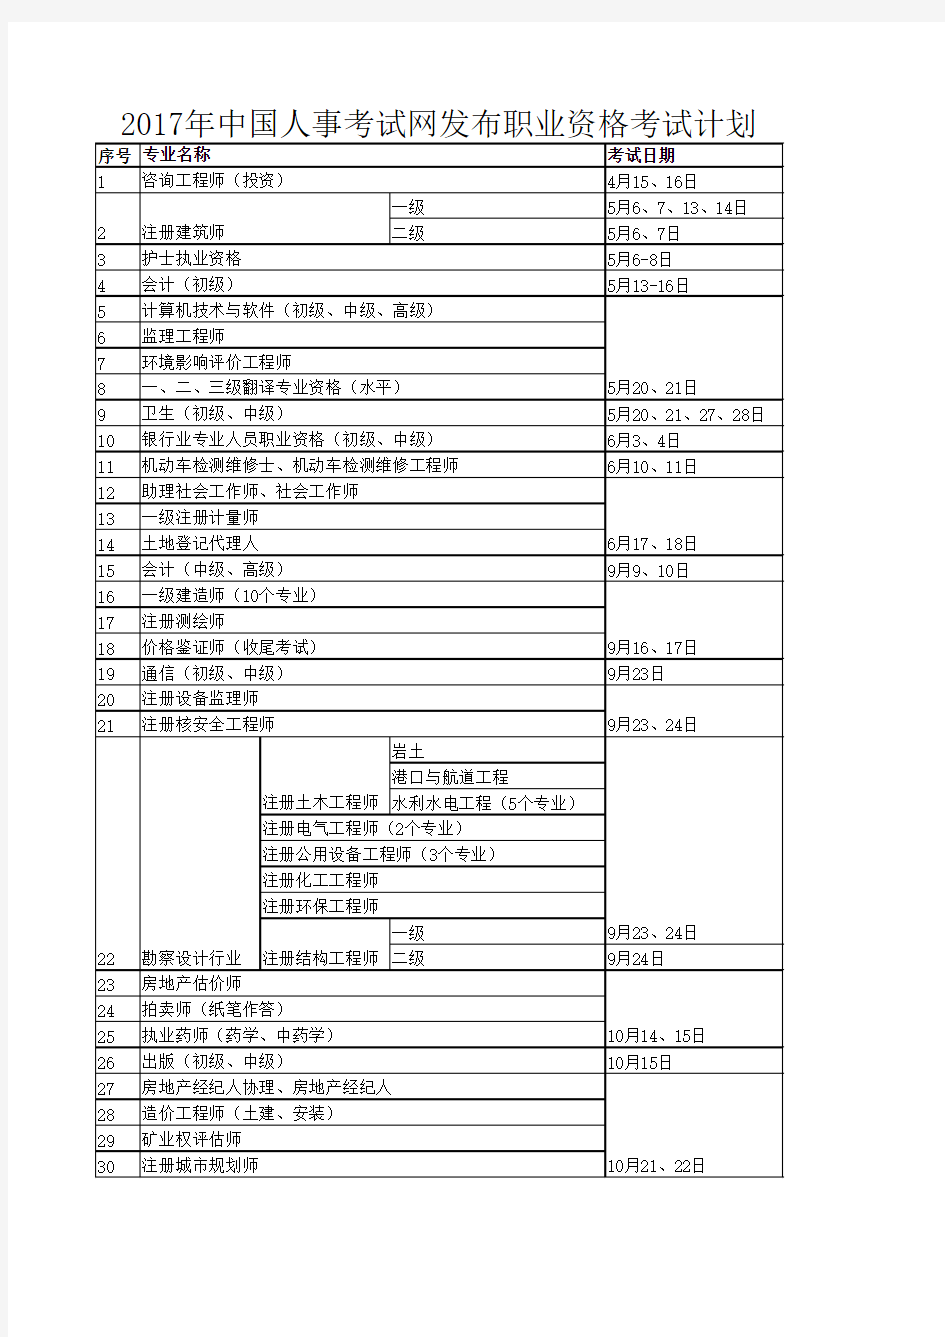 2017年中国人事考试网发布职业资格考试计划